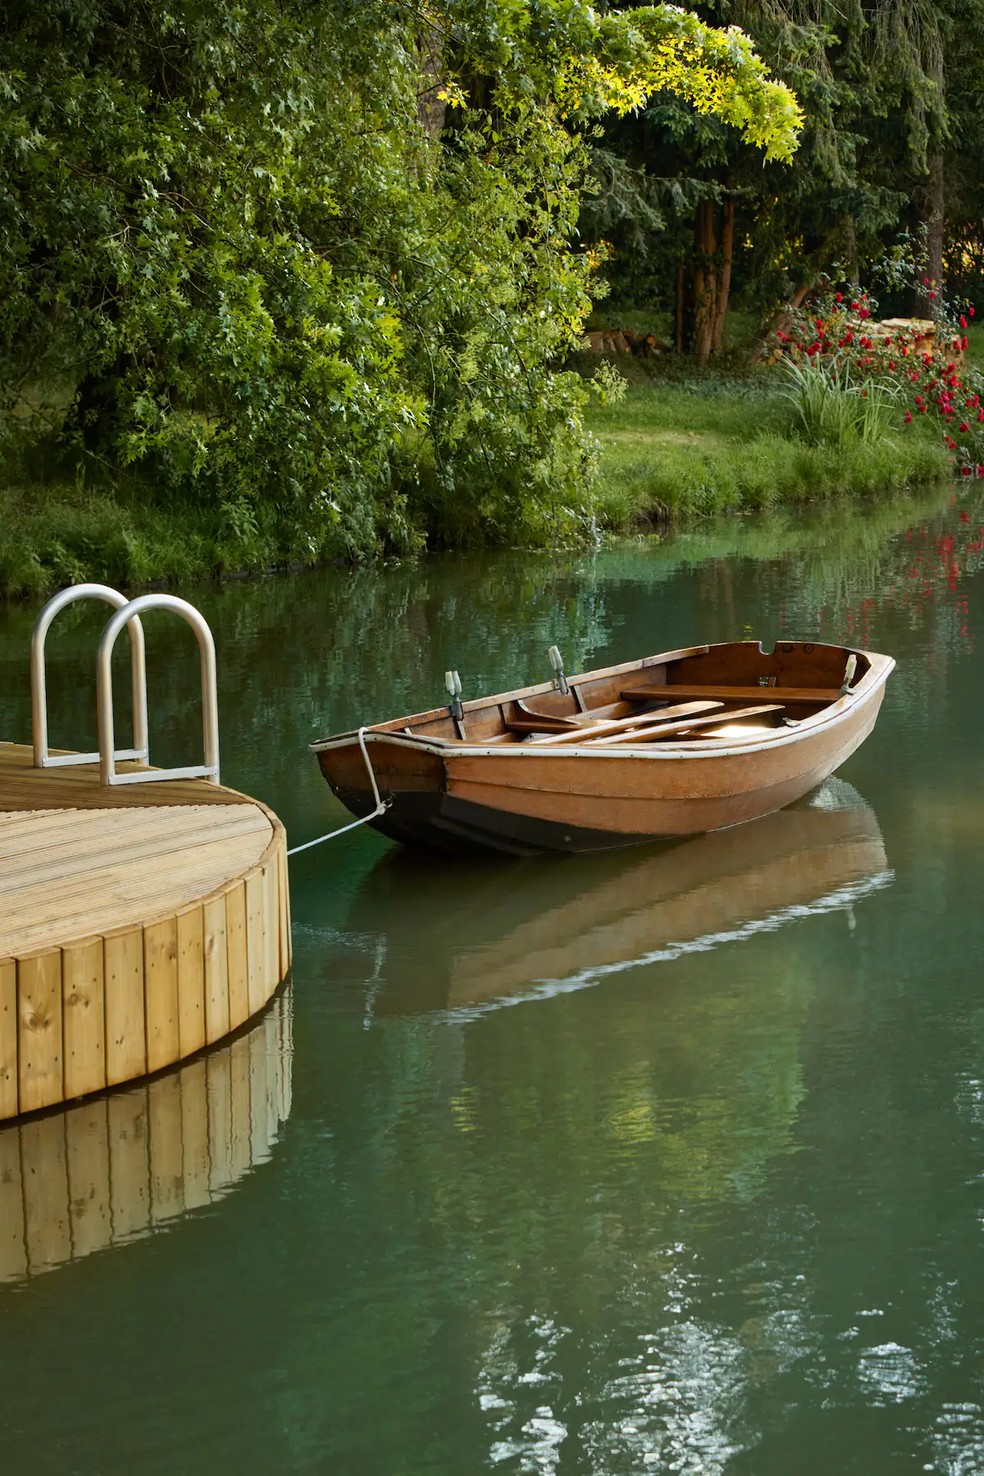 Barco que é utilizado para passeio no lago onde Coubertin se inspirou e se apaixonou pelo remo  — Foto: Claudia Zalla/Divulgação